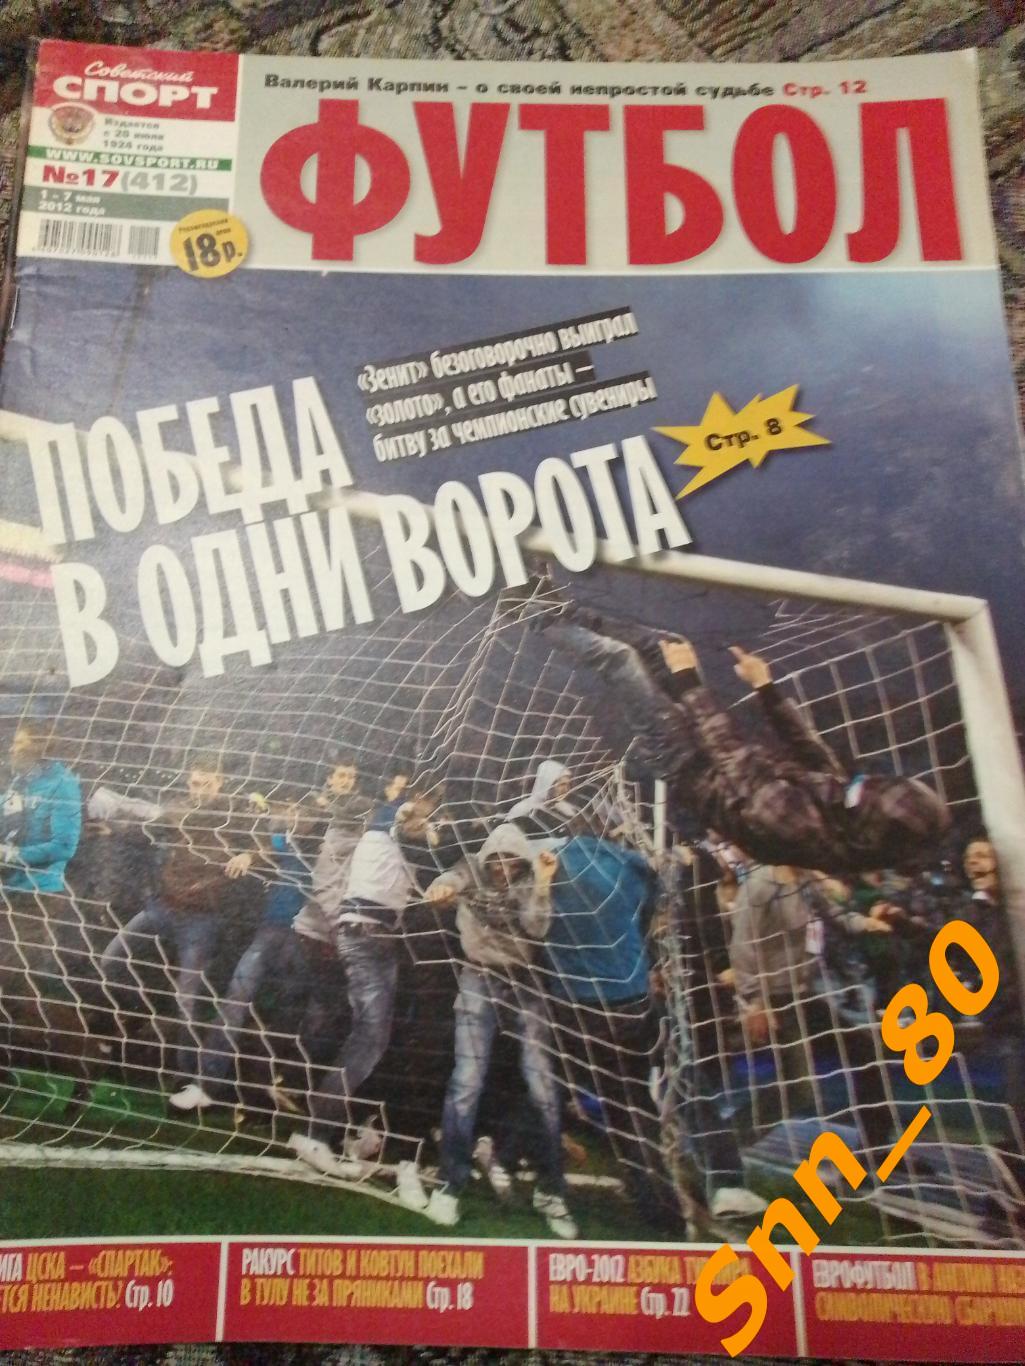 Советский Спорт - ФУТБОЛ 2012 №17